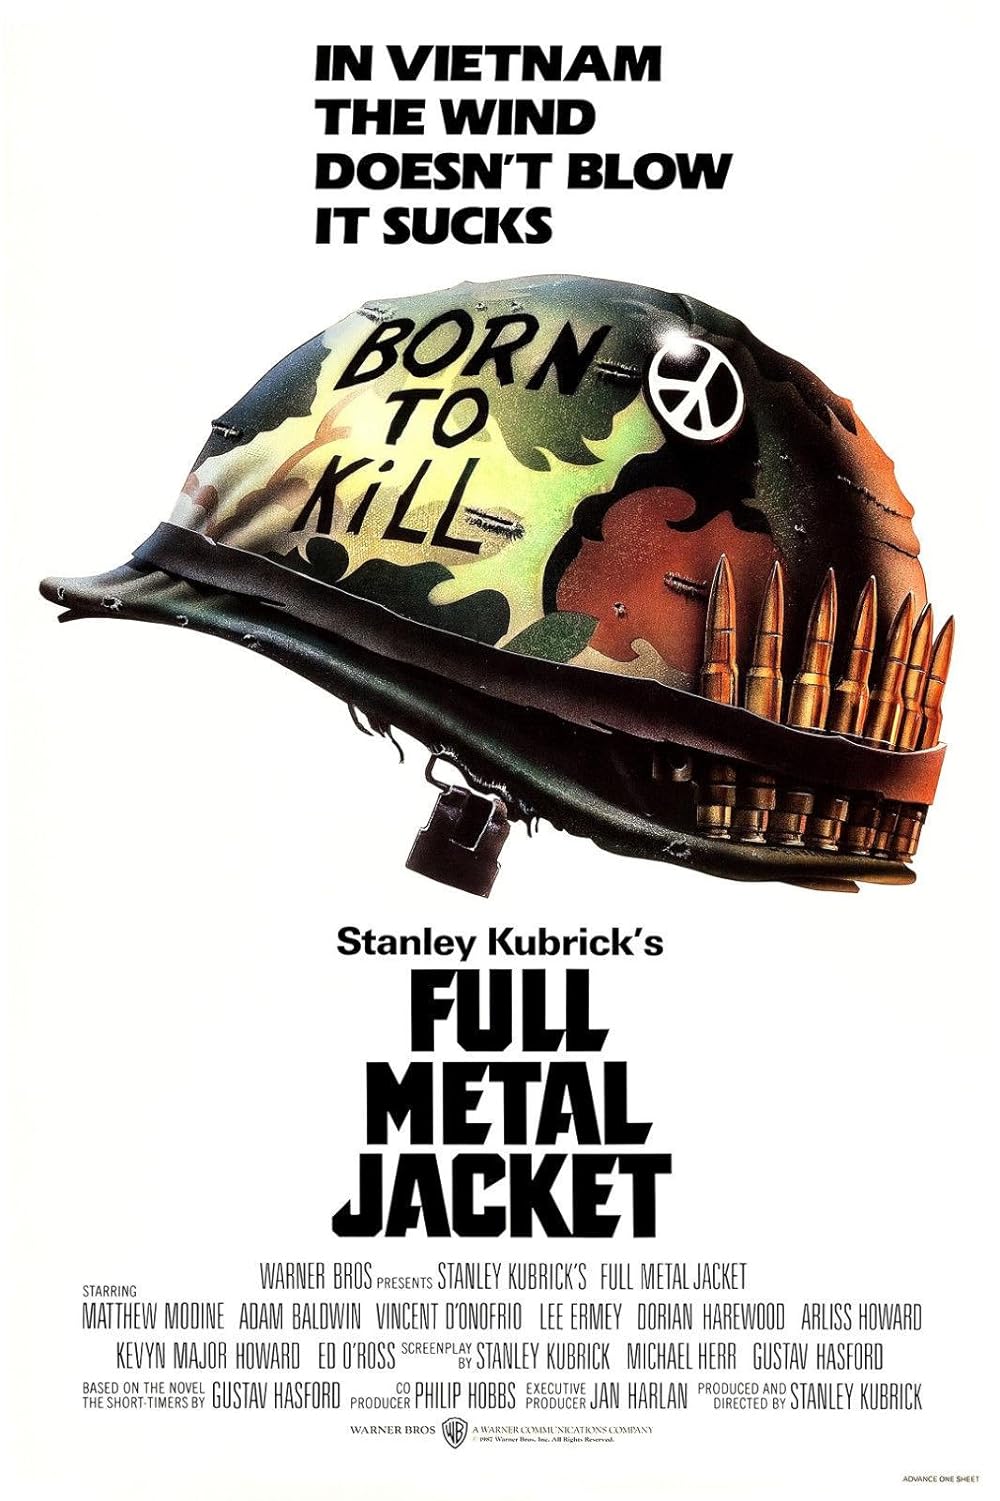 FULL MOVIE: Full Metal Jacket (1987)